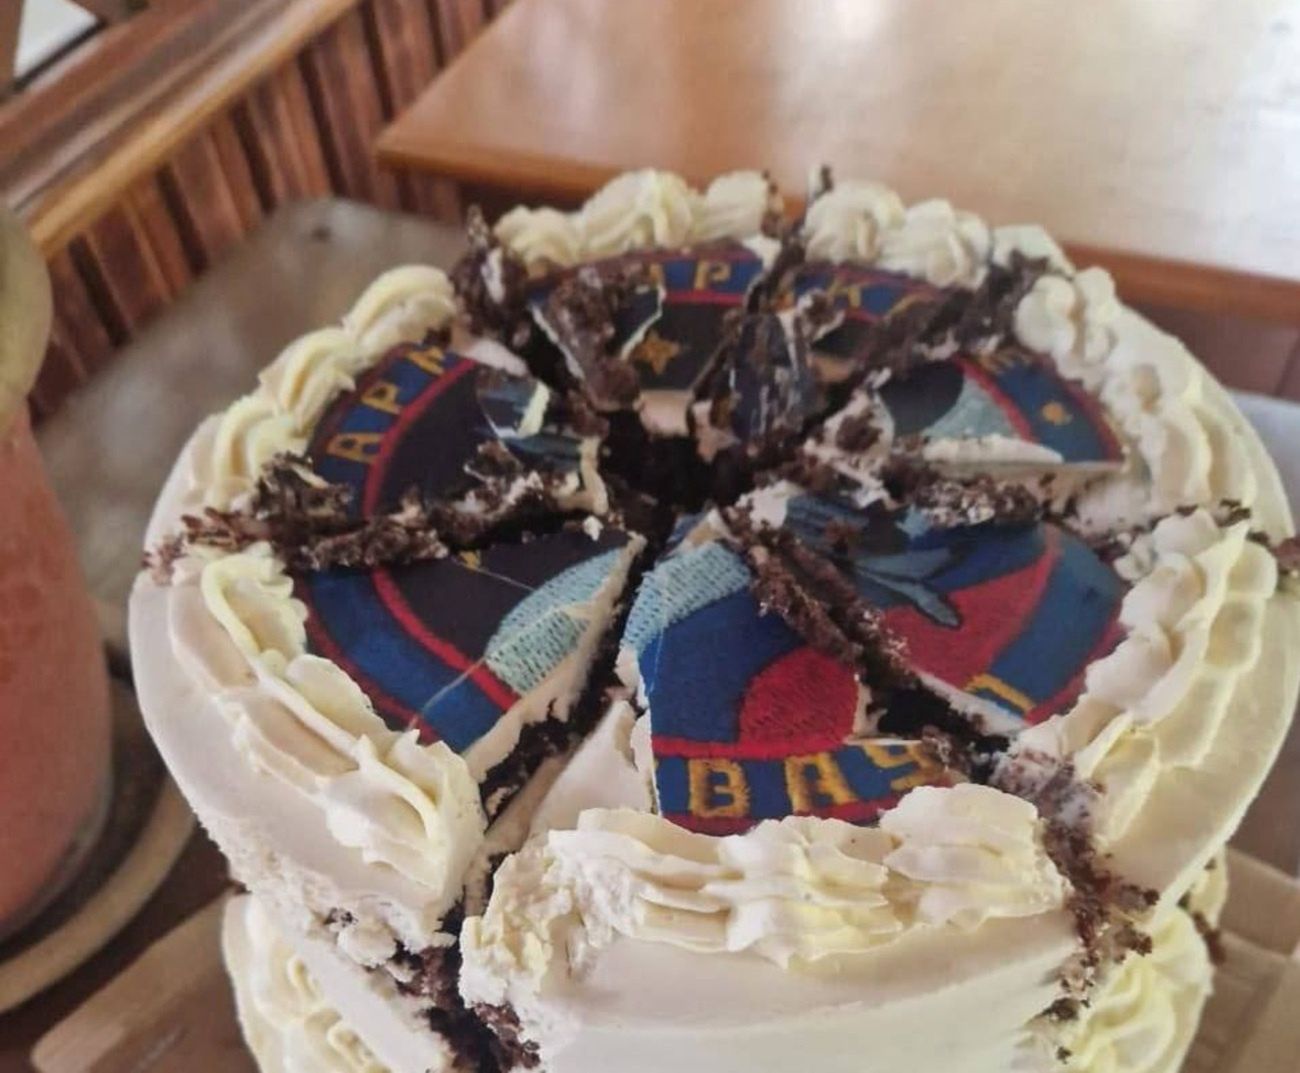 Rosyjscy piloci dostali tort i wódkę. To była pułapka